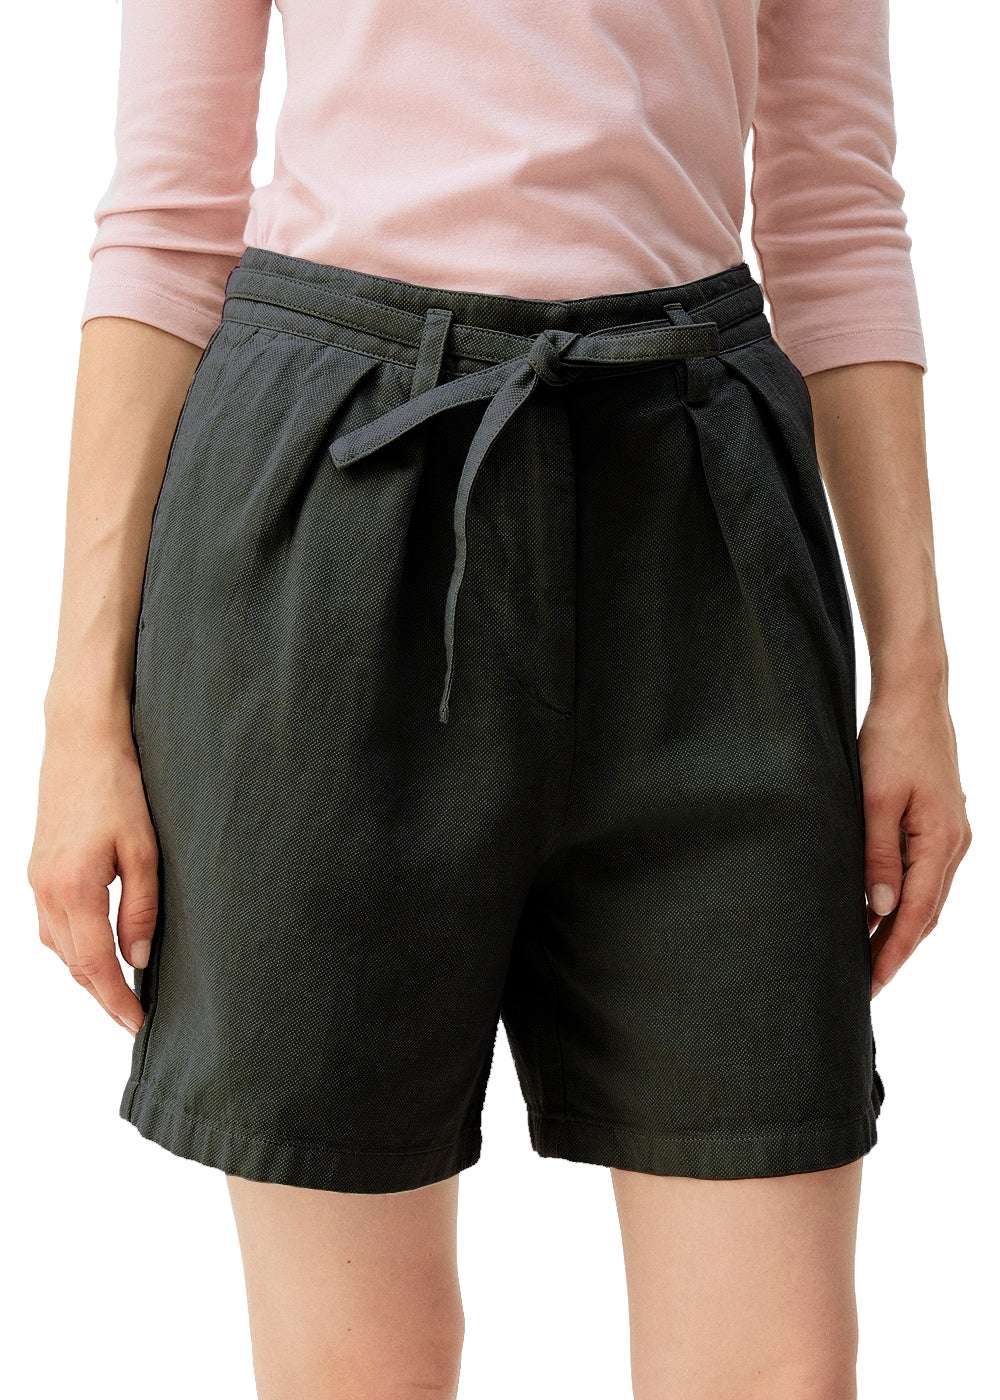 Rosso35 Shorts in edlem schwarz. Bermuda Hose in luftiger Baumwolle Leinen Qualität von Rosso35 online kaufen. Gepflegte Damen Shorts mit Bundfalte und Bindegürtel aus der neuen Rosso35 Kollektion.